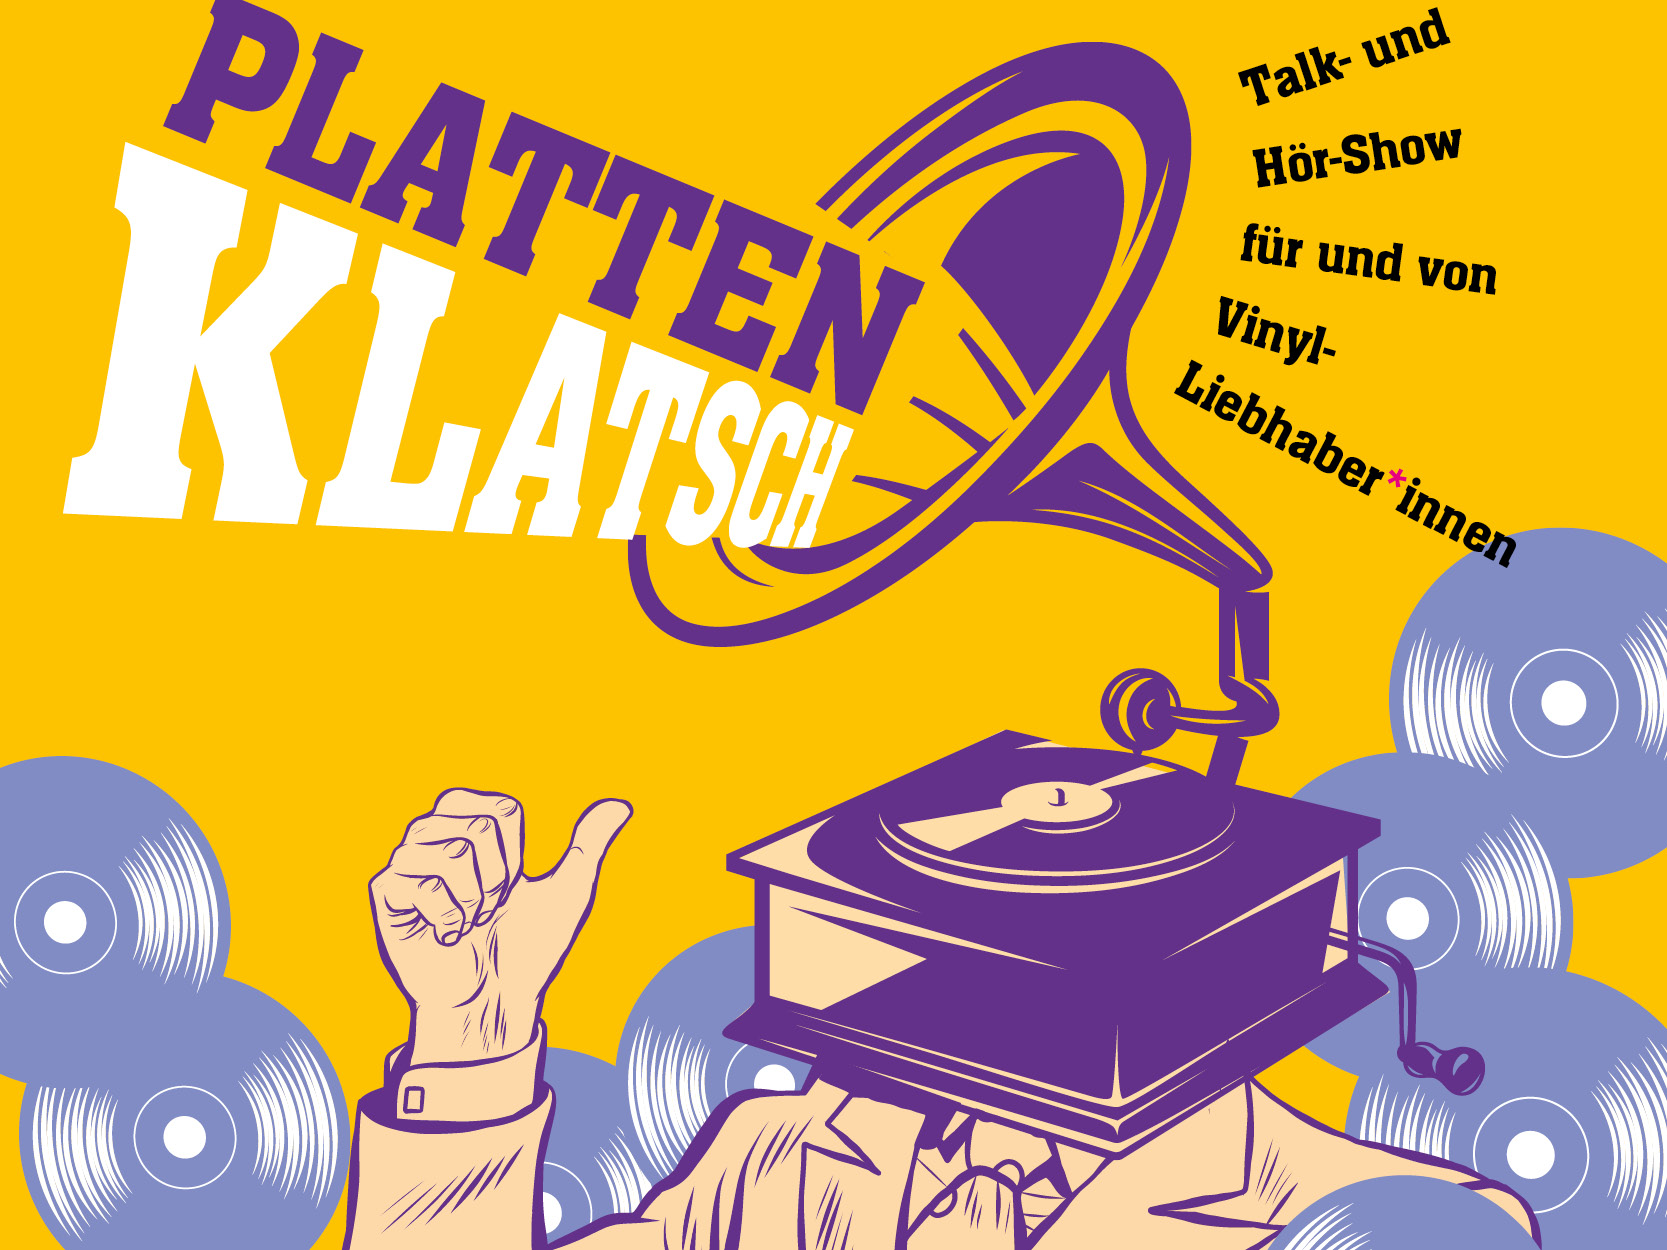 PlattenKlatsch - Talk- und Hörshow für Vinyl-Liebhaber*innen